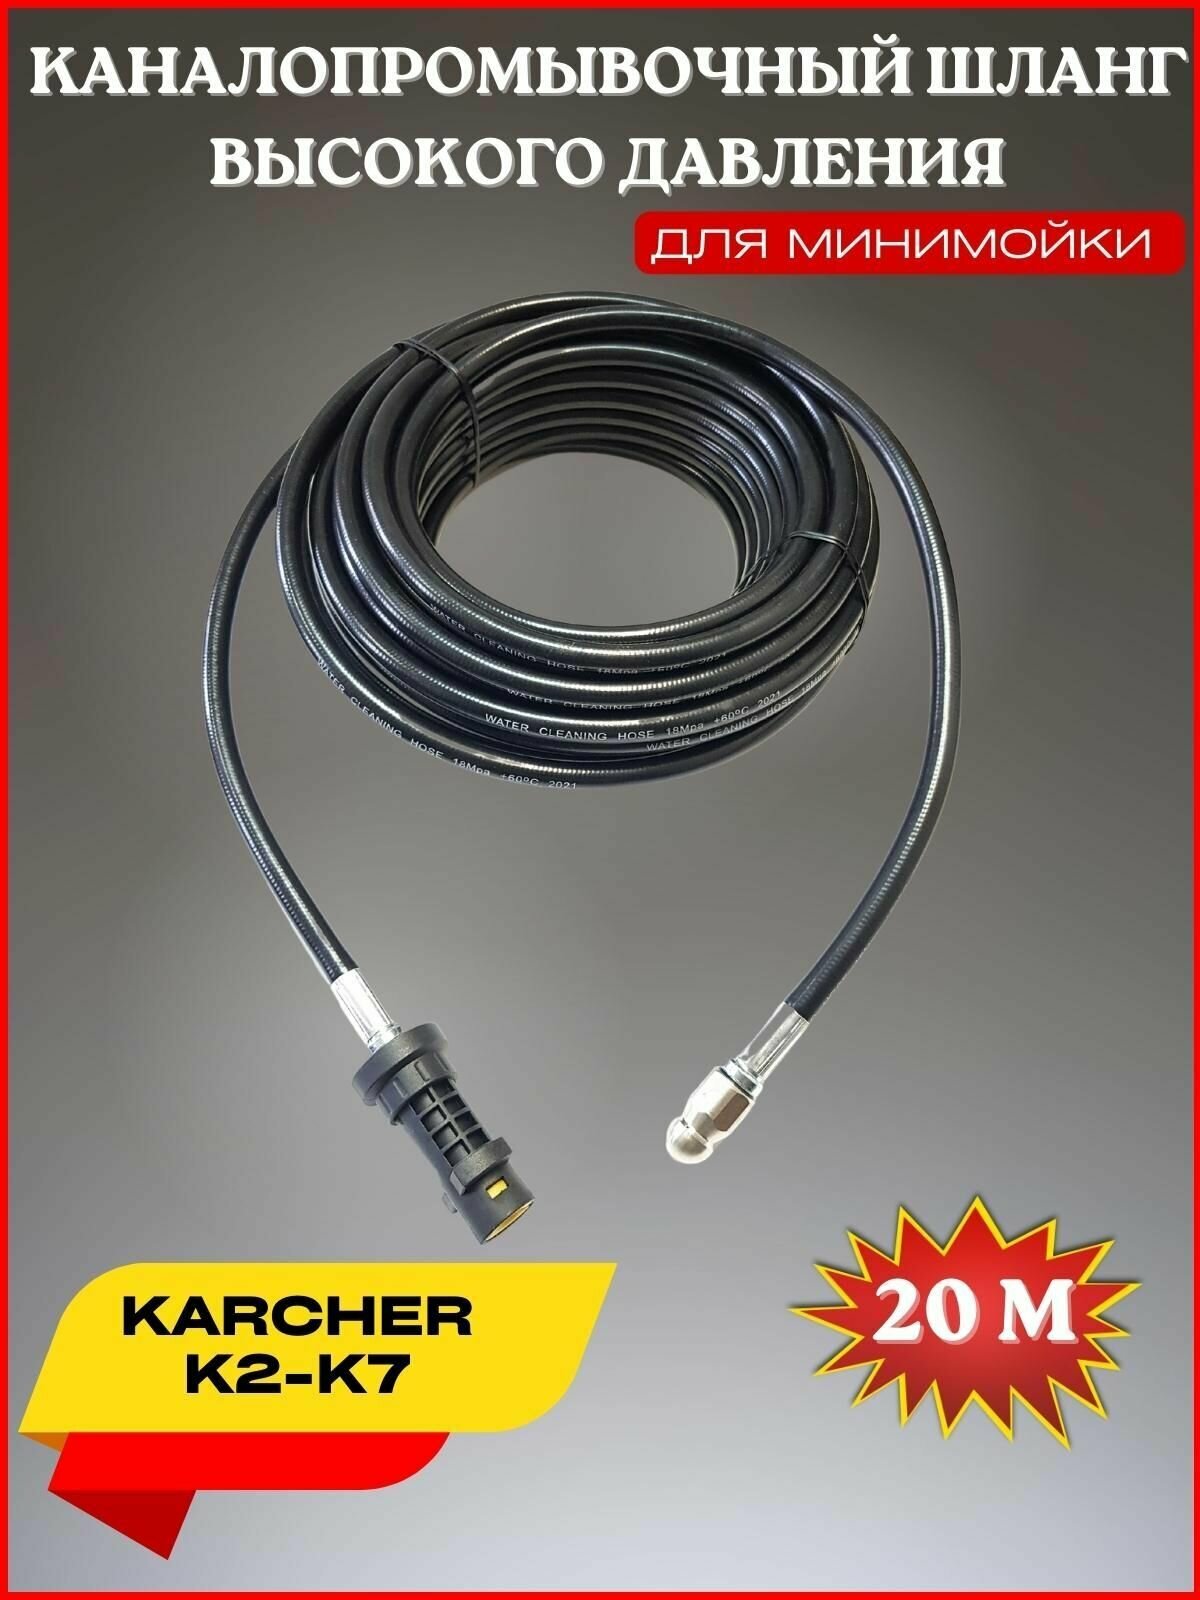 Шланг для промывки канализации 20м форсунка 3x1- для Karcher K2-K7 (Керхер)